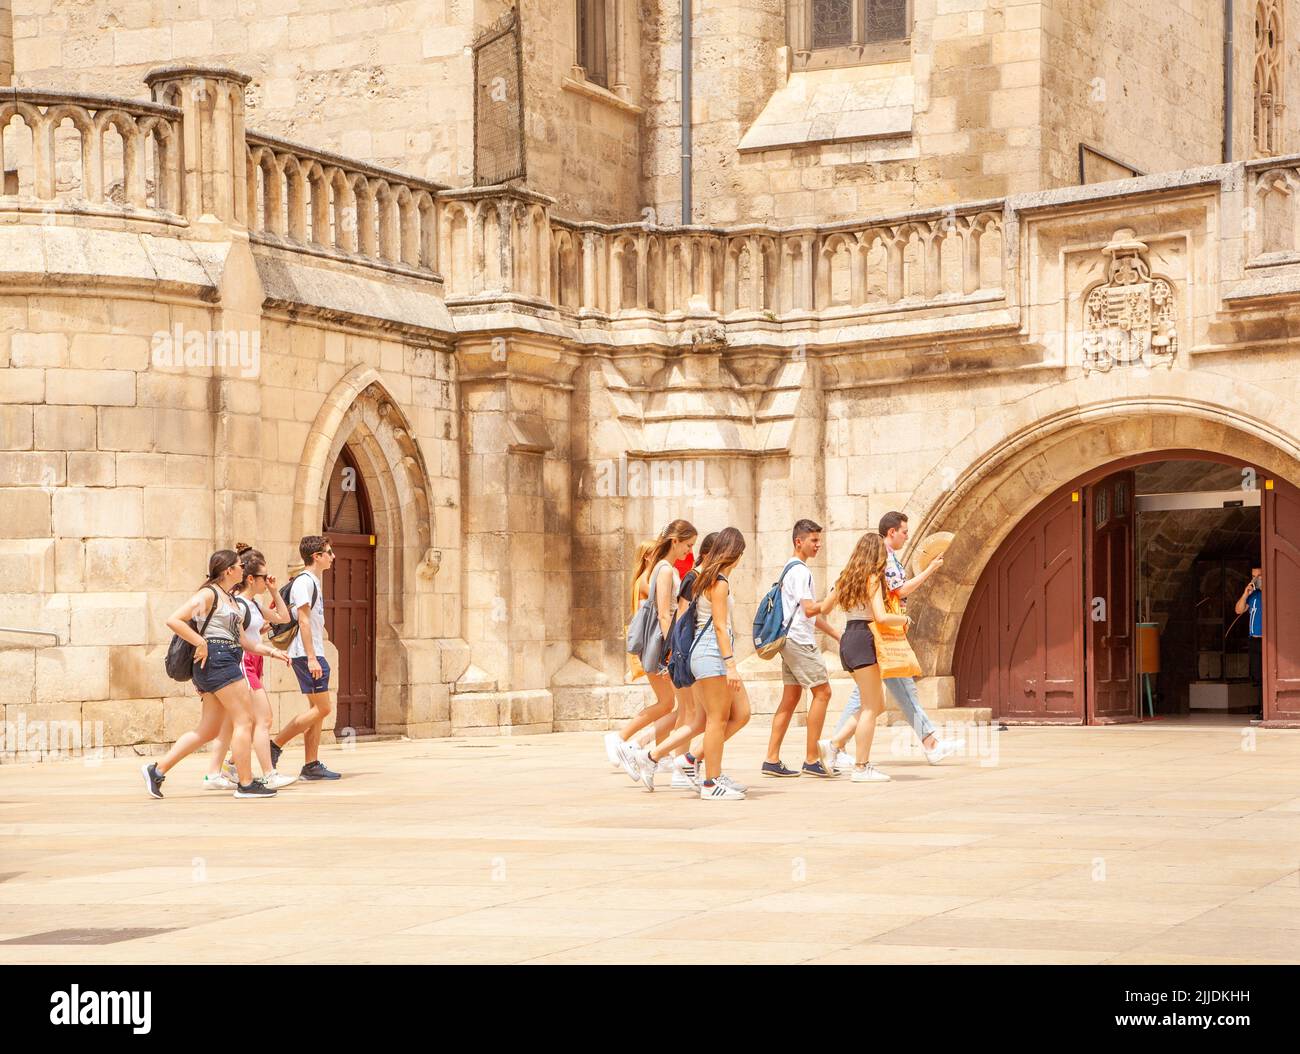 Grupo escolar que pasa por la catedral en la plaza Santa María, Burgos España Foto de stock